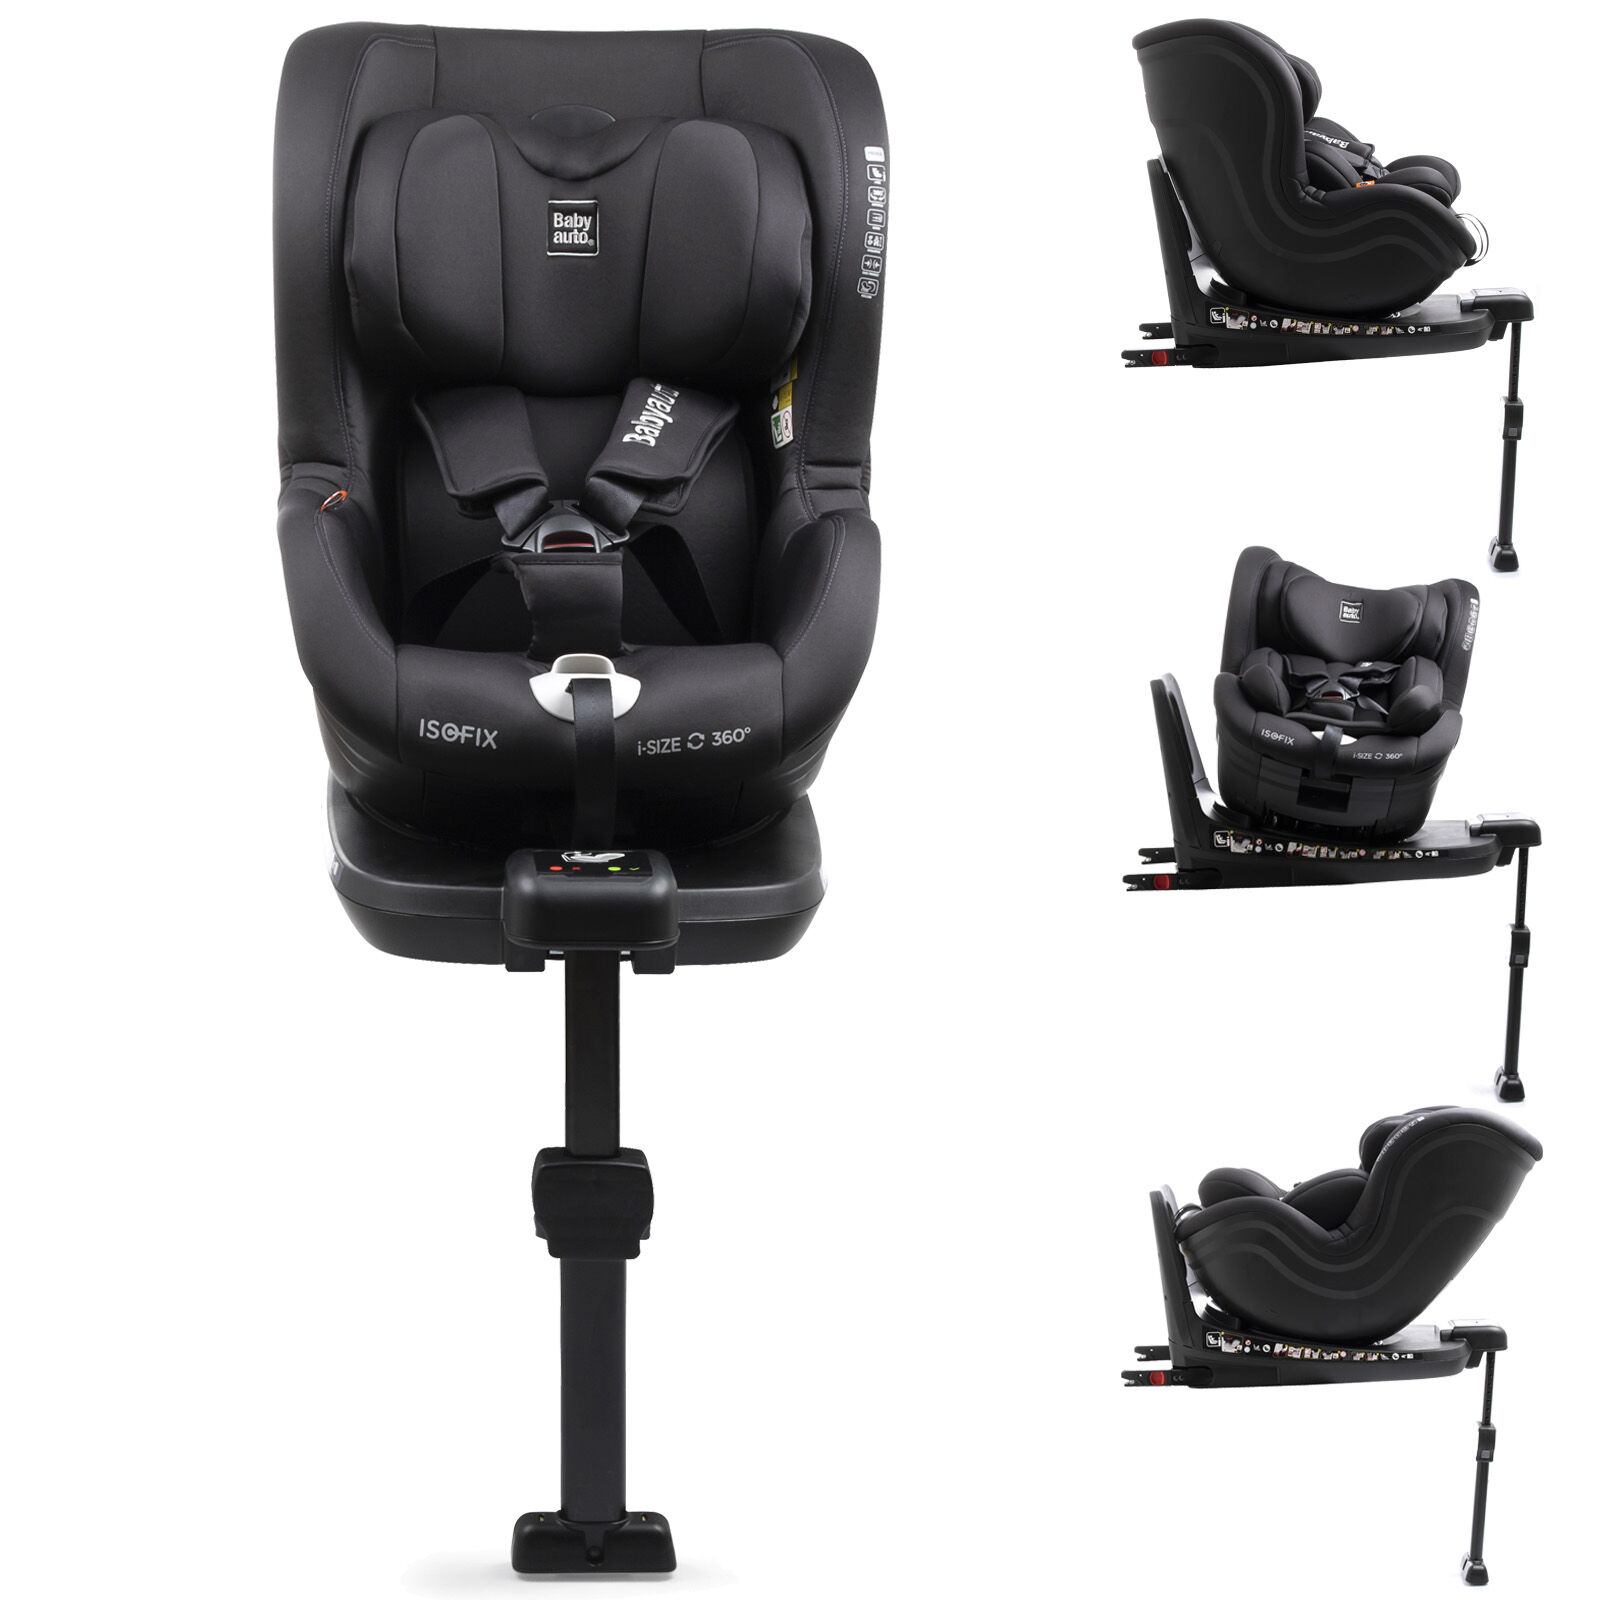 Babyauto Signa i-Size Spin 360 Group 0+/1 ISOFIX Car Seat - Black